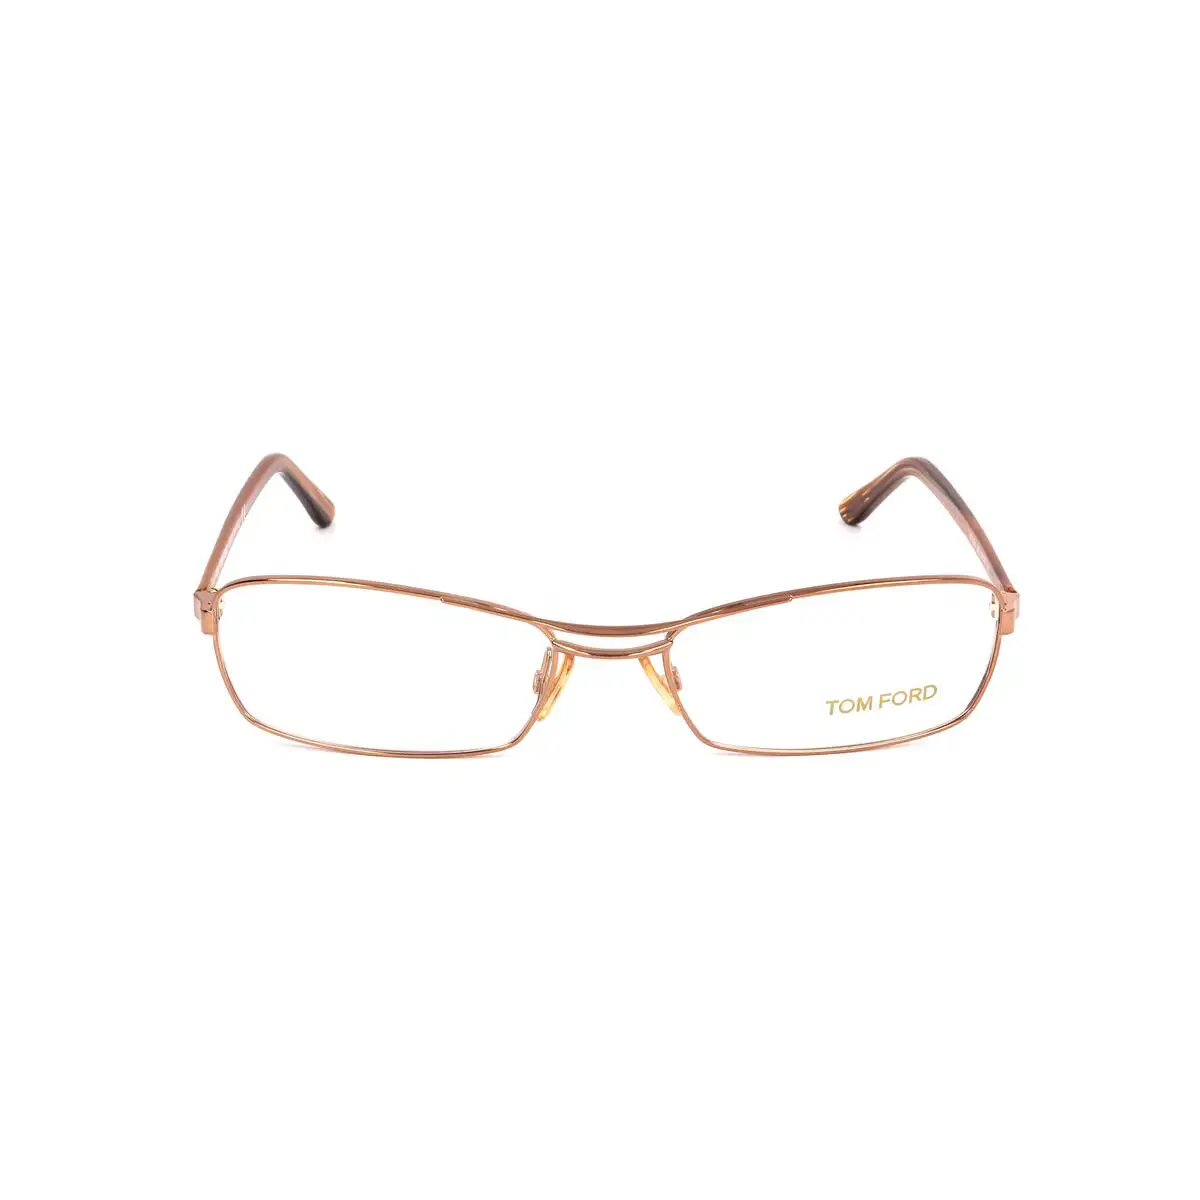 Monture de lunettes femme tom ford ft5024 268 54 dore marron_4552. Découvrez DIAYTAR SENEGAL - Votre Destination de Shopping Inspirée. Naviguez à travers nos offres variées et trouvez des articles qui reflètent votre personnalité et vos goûts.